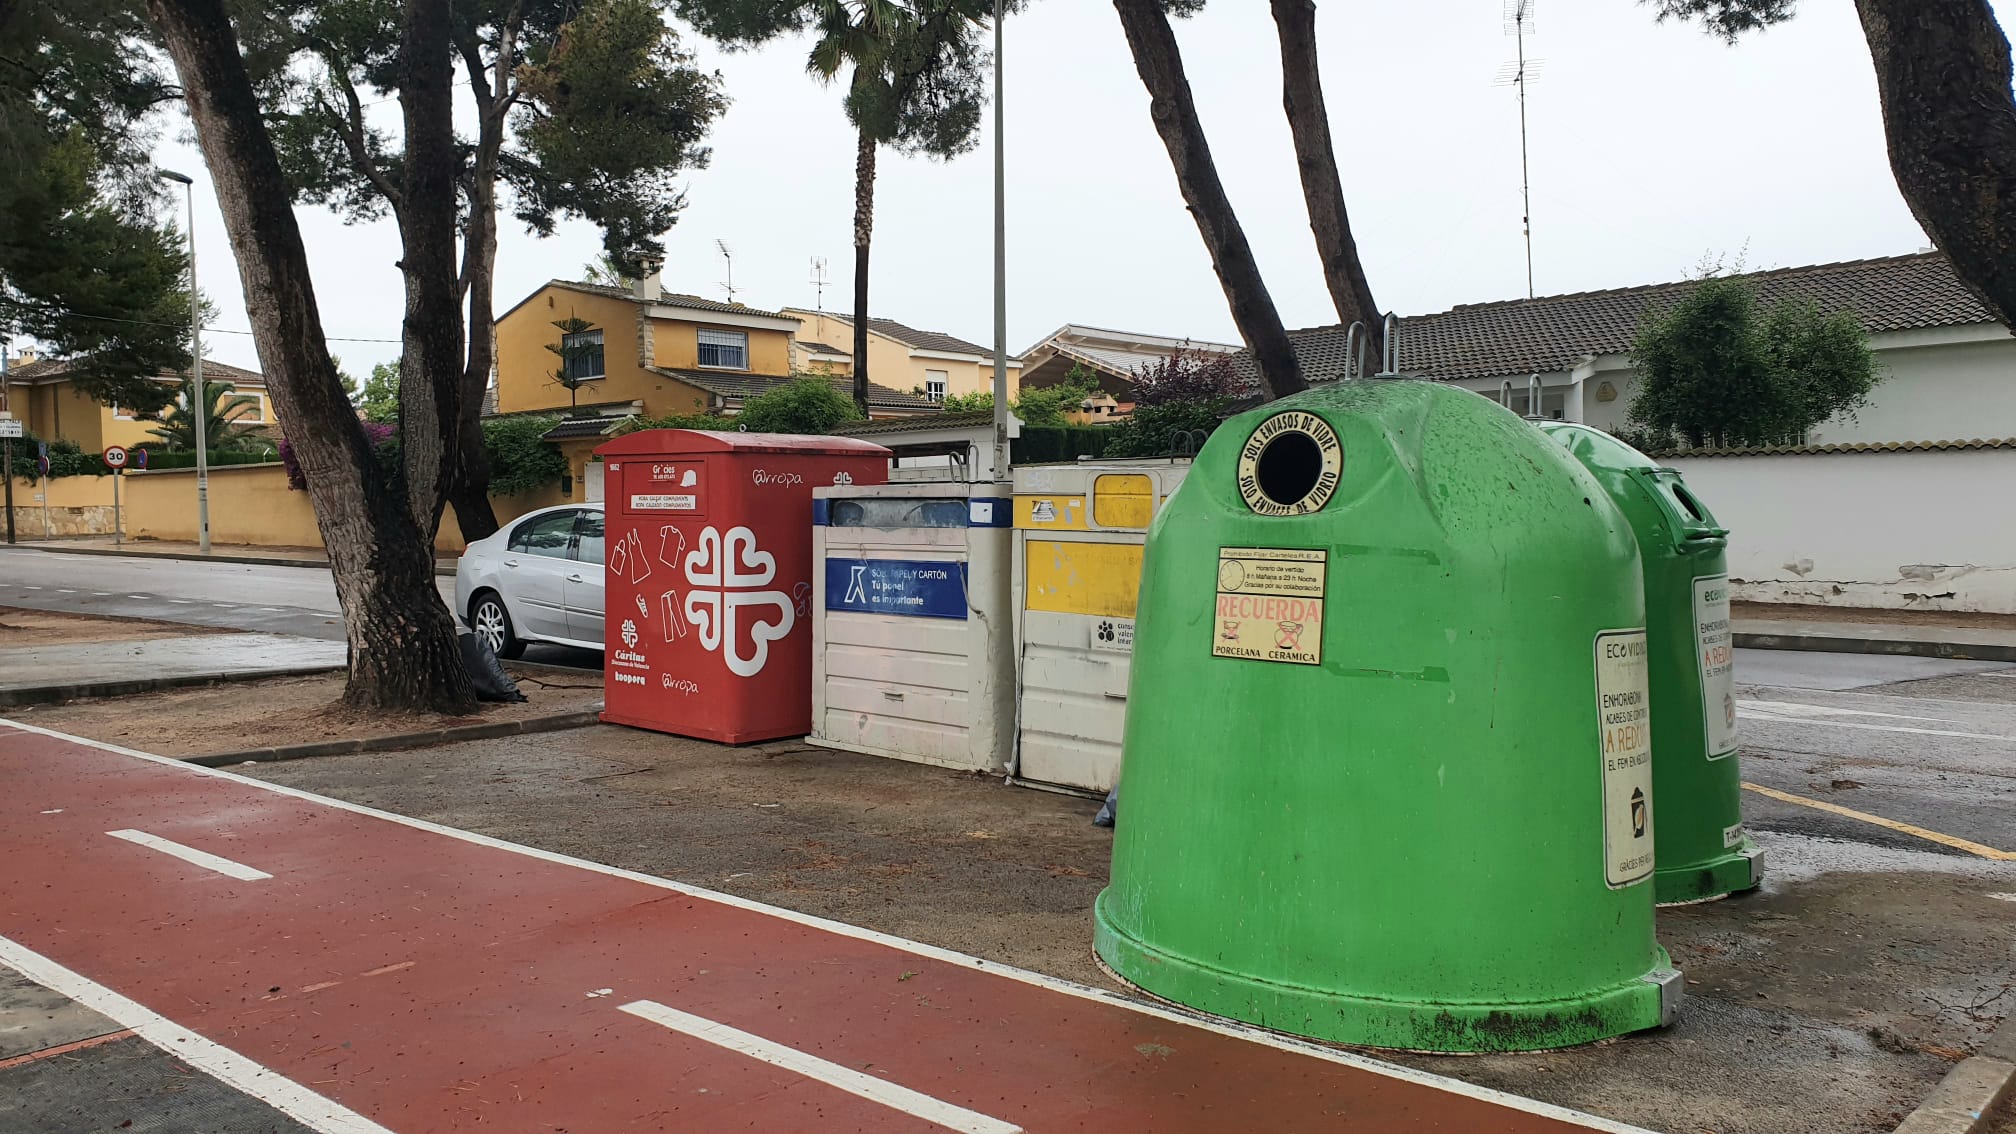 Riba-roja ver mejorado el servicio de recogida selectiva de residuos al aumentar la frecuencia de paso de los camiones